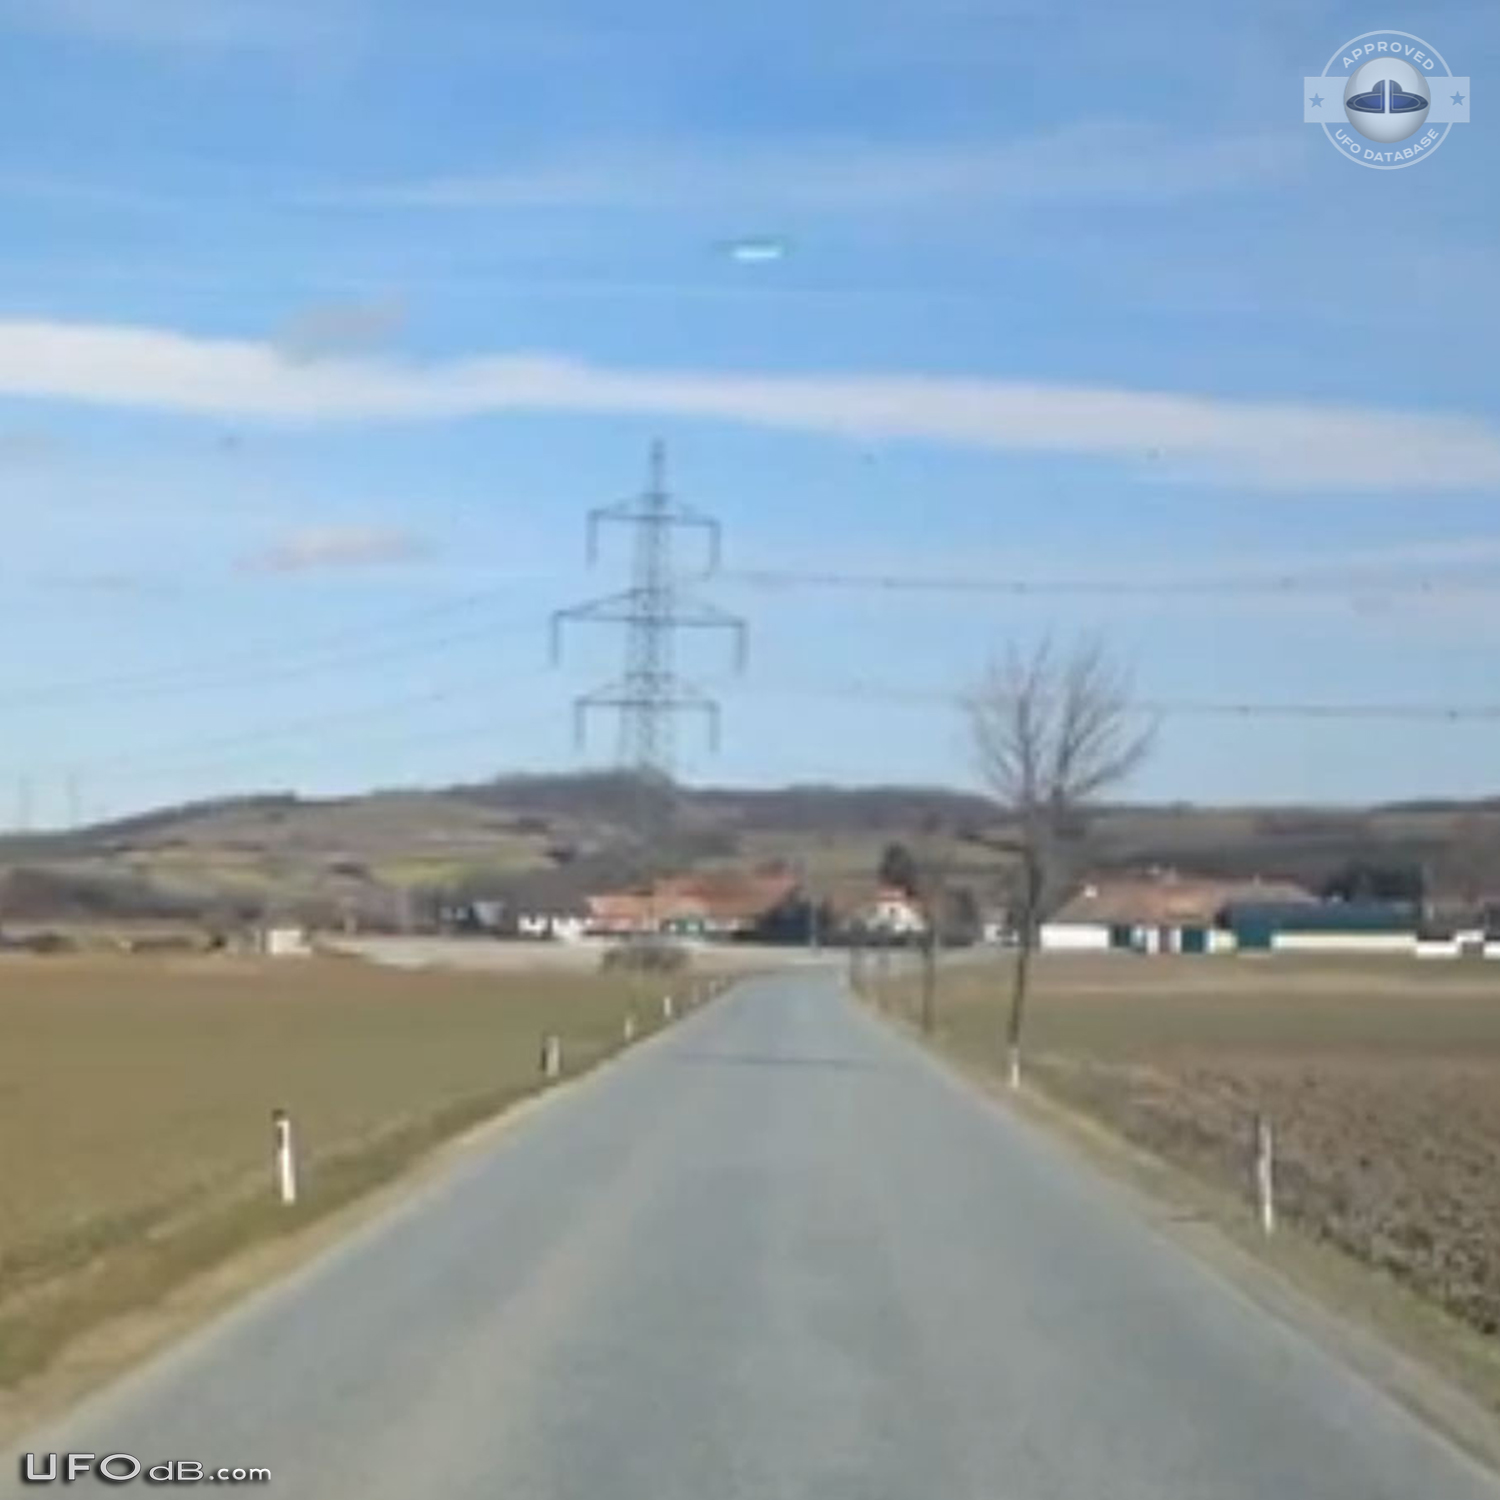 UFO picture taken near Sitzendorf an der Schmida in Austria - 2013 UFO Picture #547-2